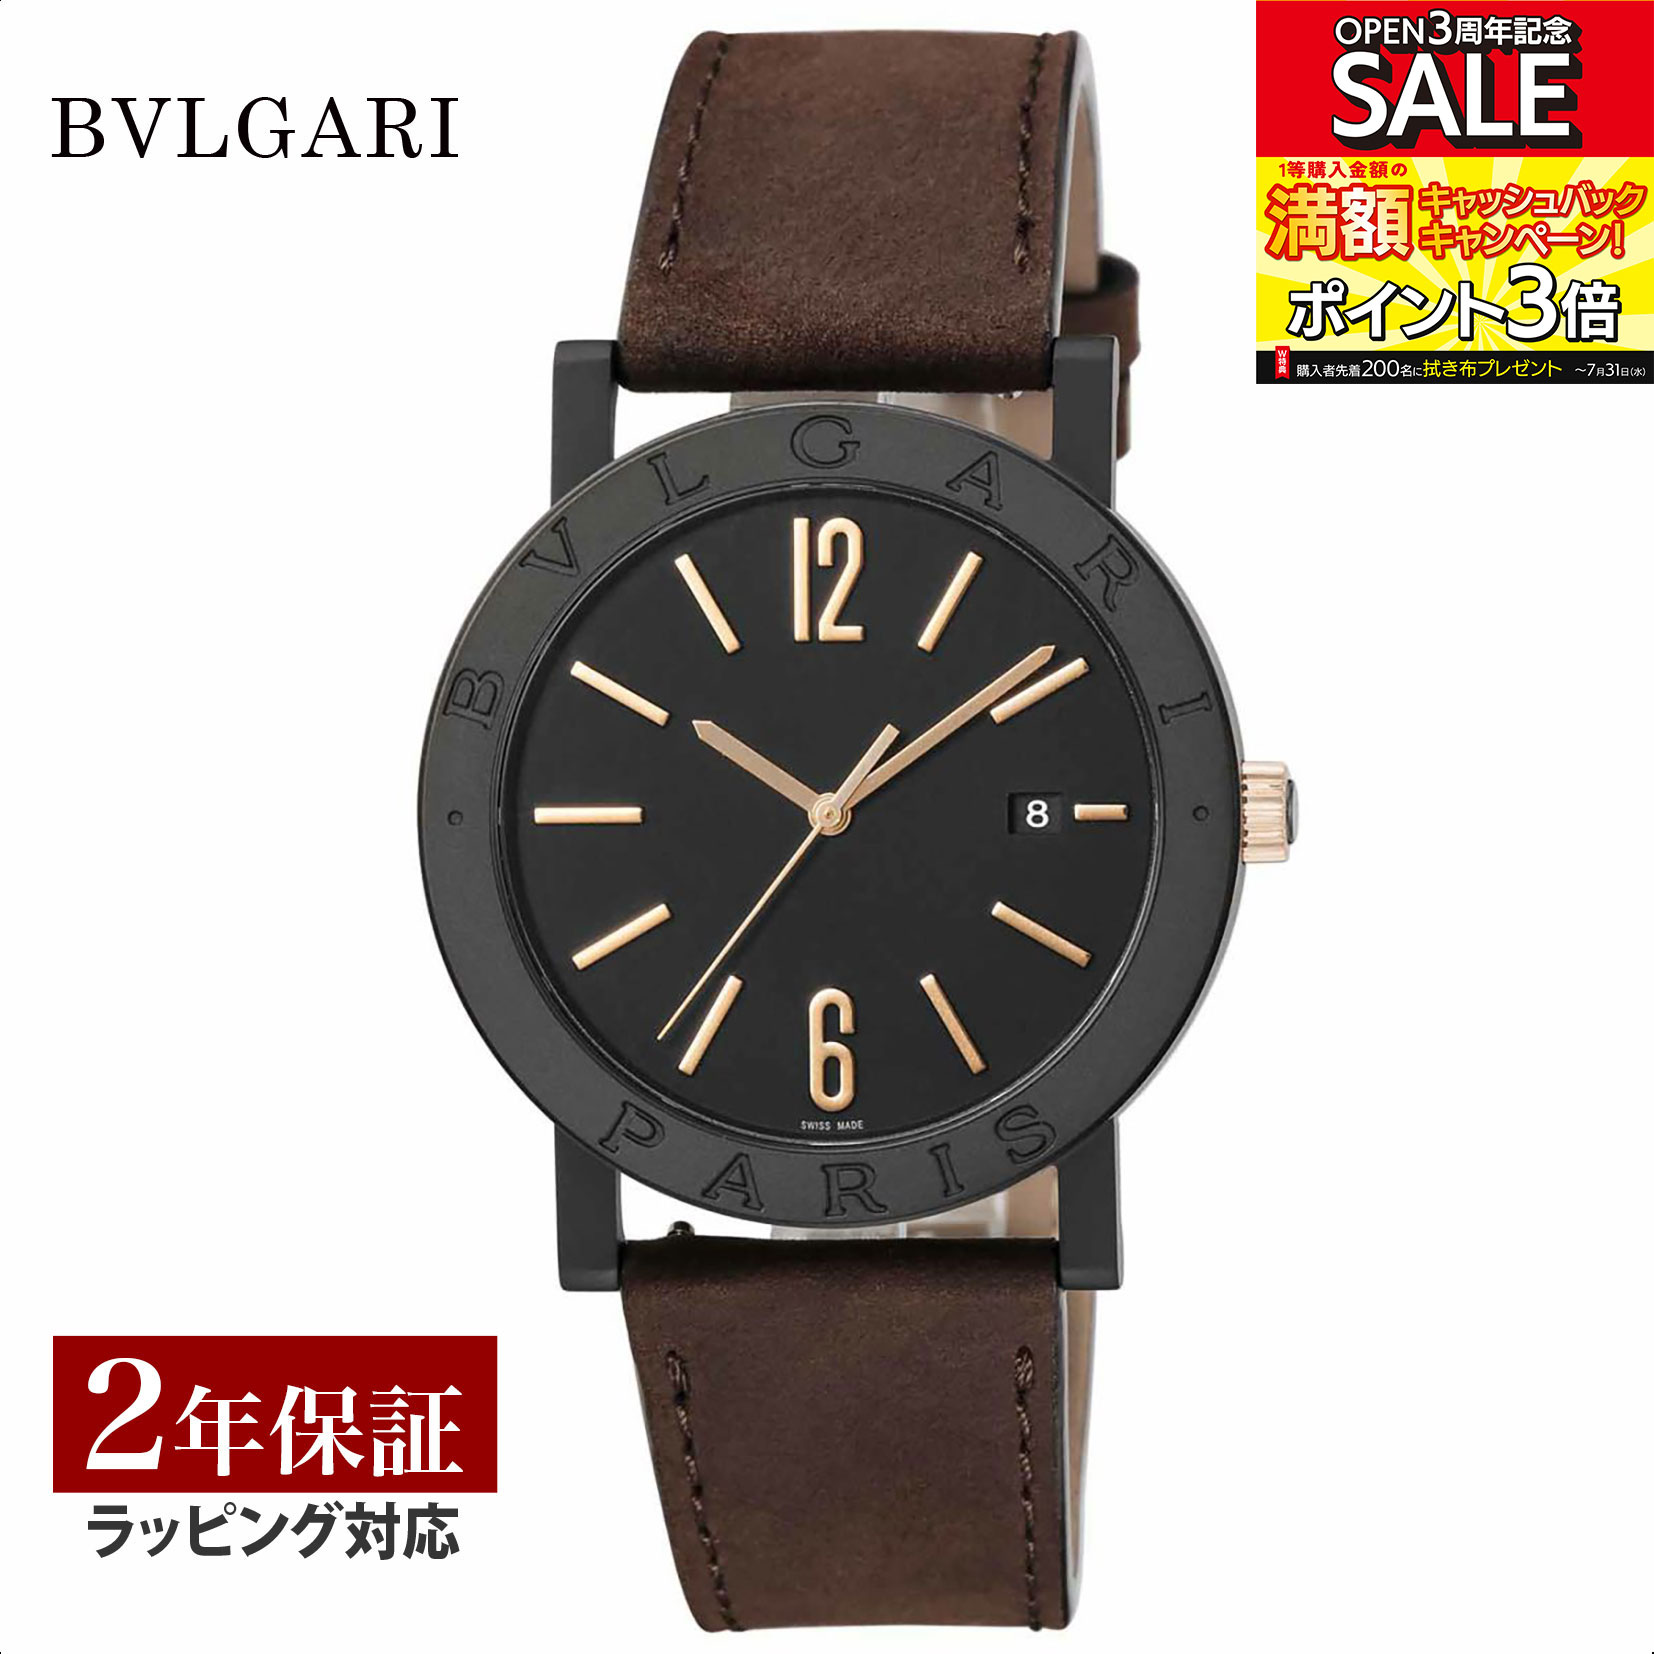 【レビューでブルガリランチ券】【当店限定】 ブルガリ BVLGARI メンズ 時計 Bvlgari Bvlgari ブルガリブルガリ 自動巻 ブラック BB41BTDLCCL/PARIS 時計 腕時計 高級腕時計 ブランド